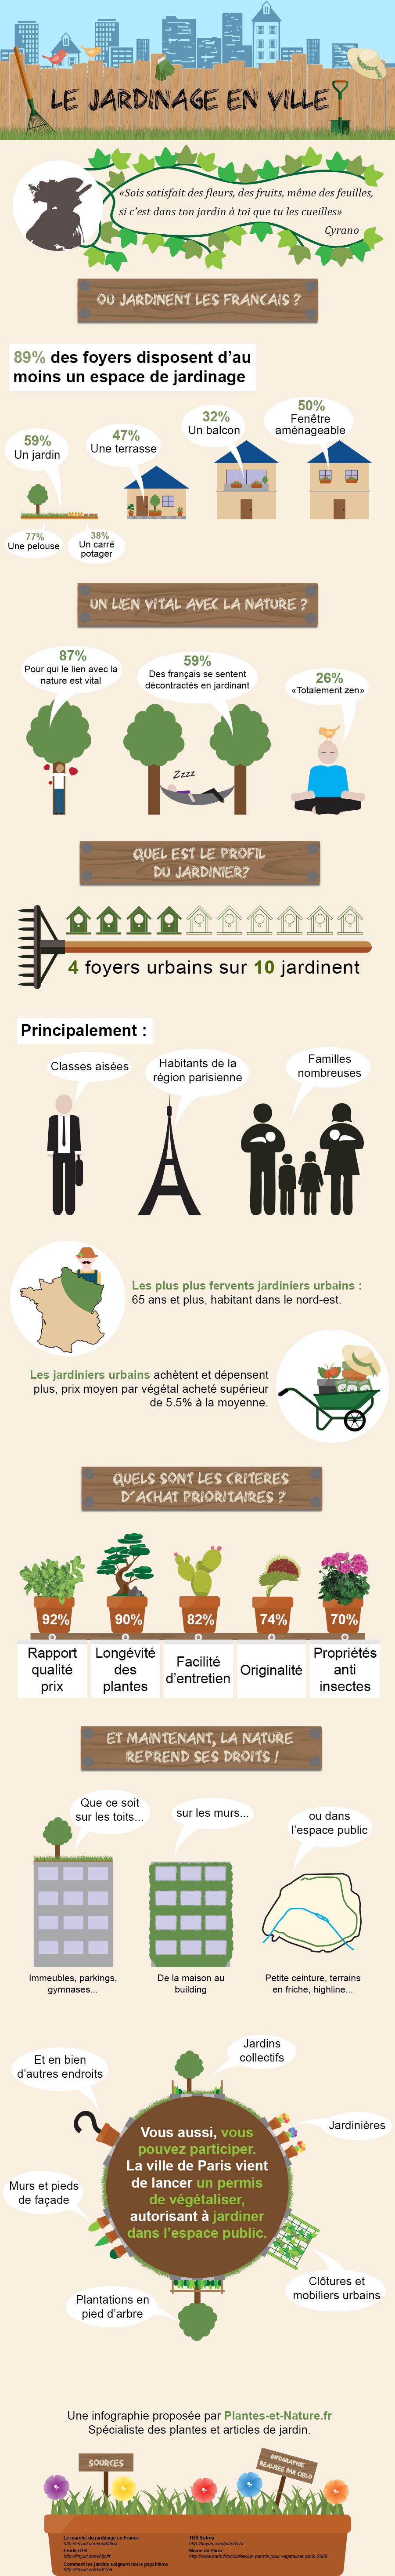 Les français et le jardinage en ville - infographie